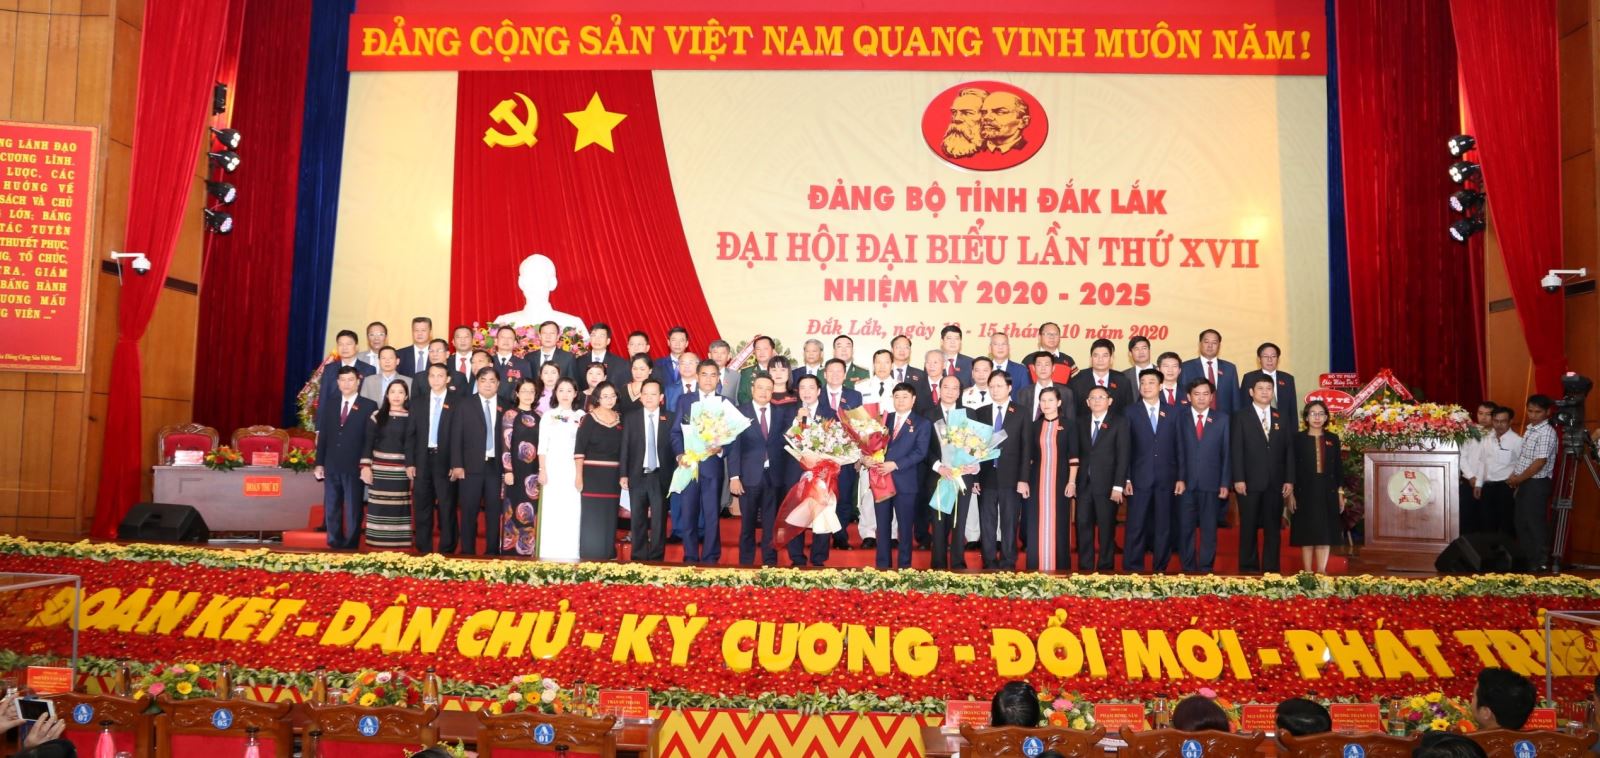  Hình ảnh đại hội đại biểu lần thứ XVII tại tỉnh Đắk Lắk